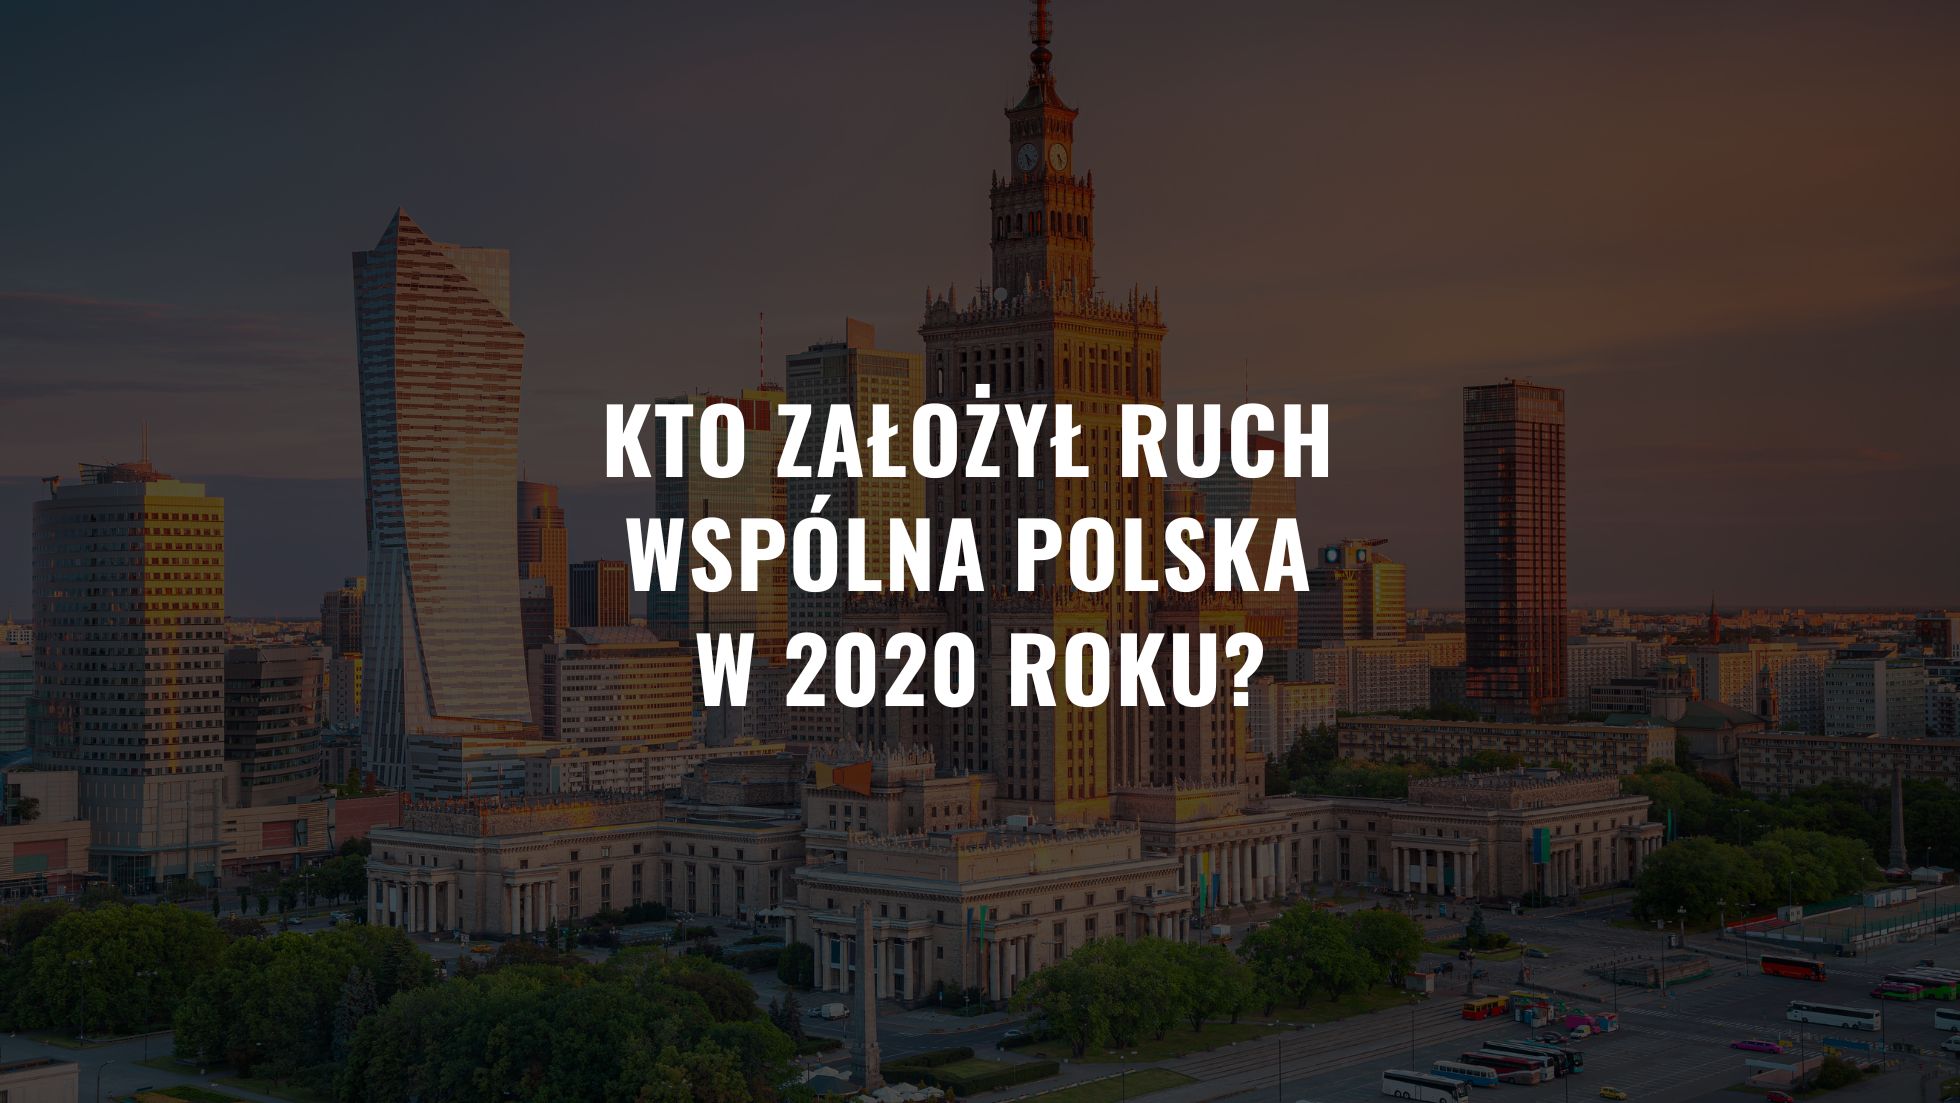 Kto założył Ruch Wspólna Polska w 2020 roku